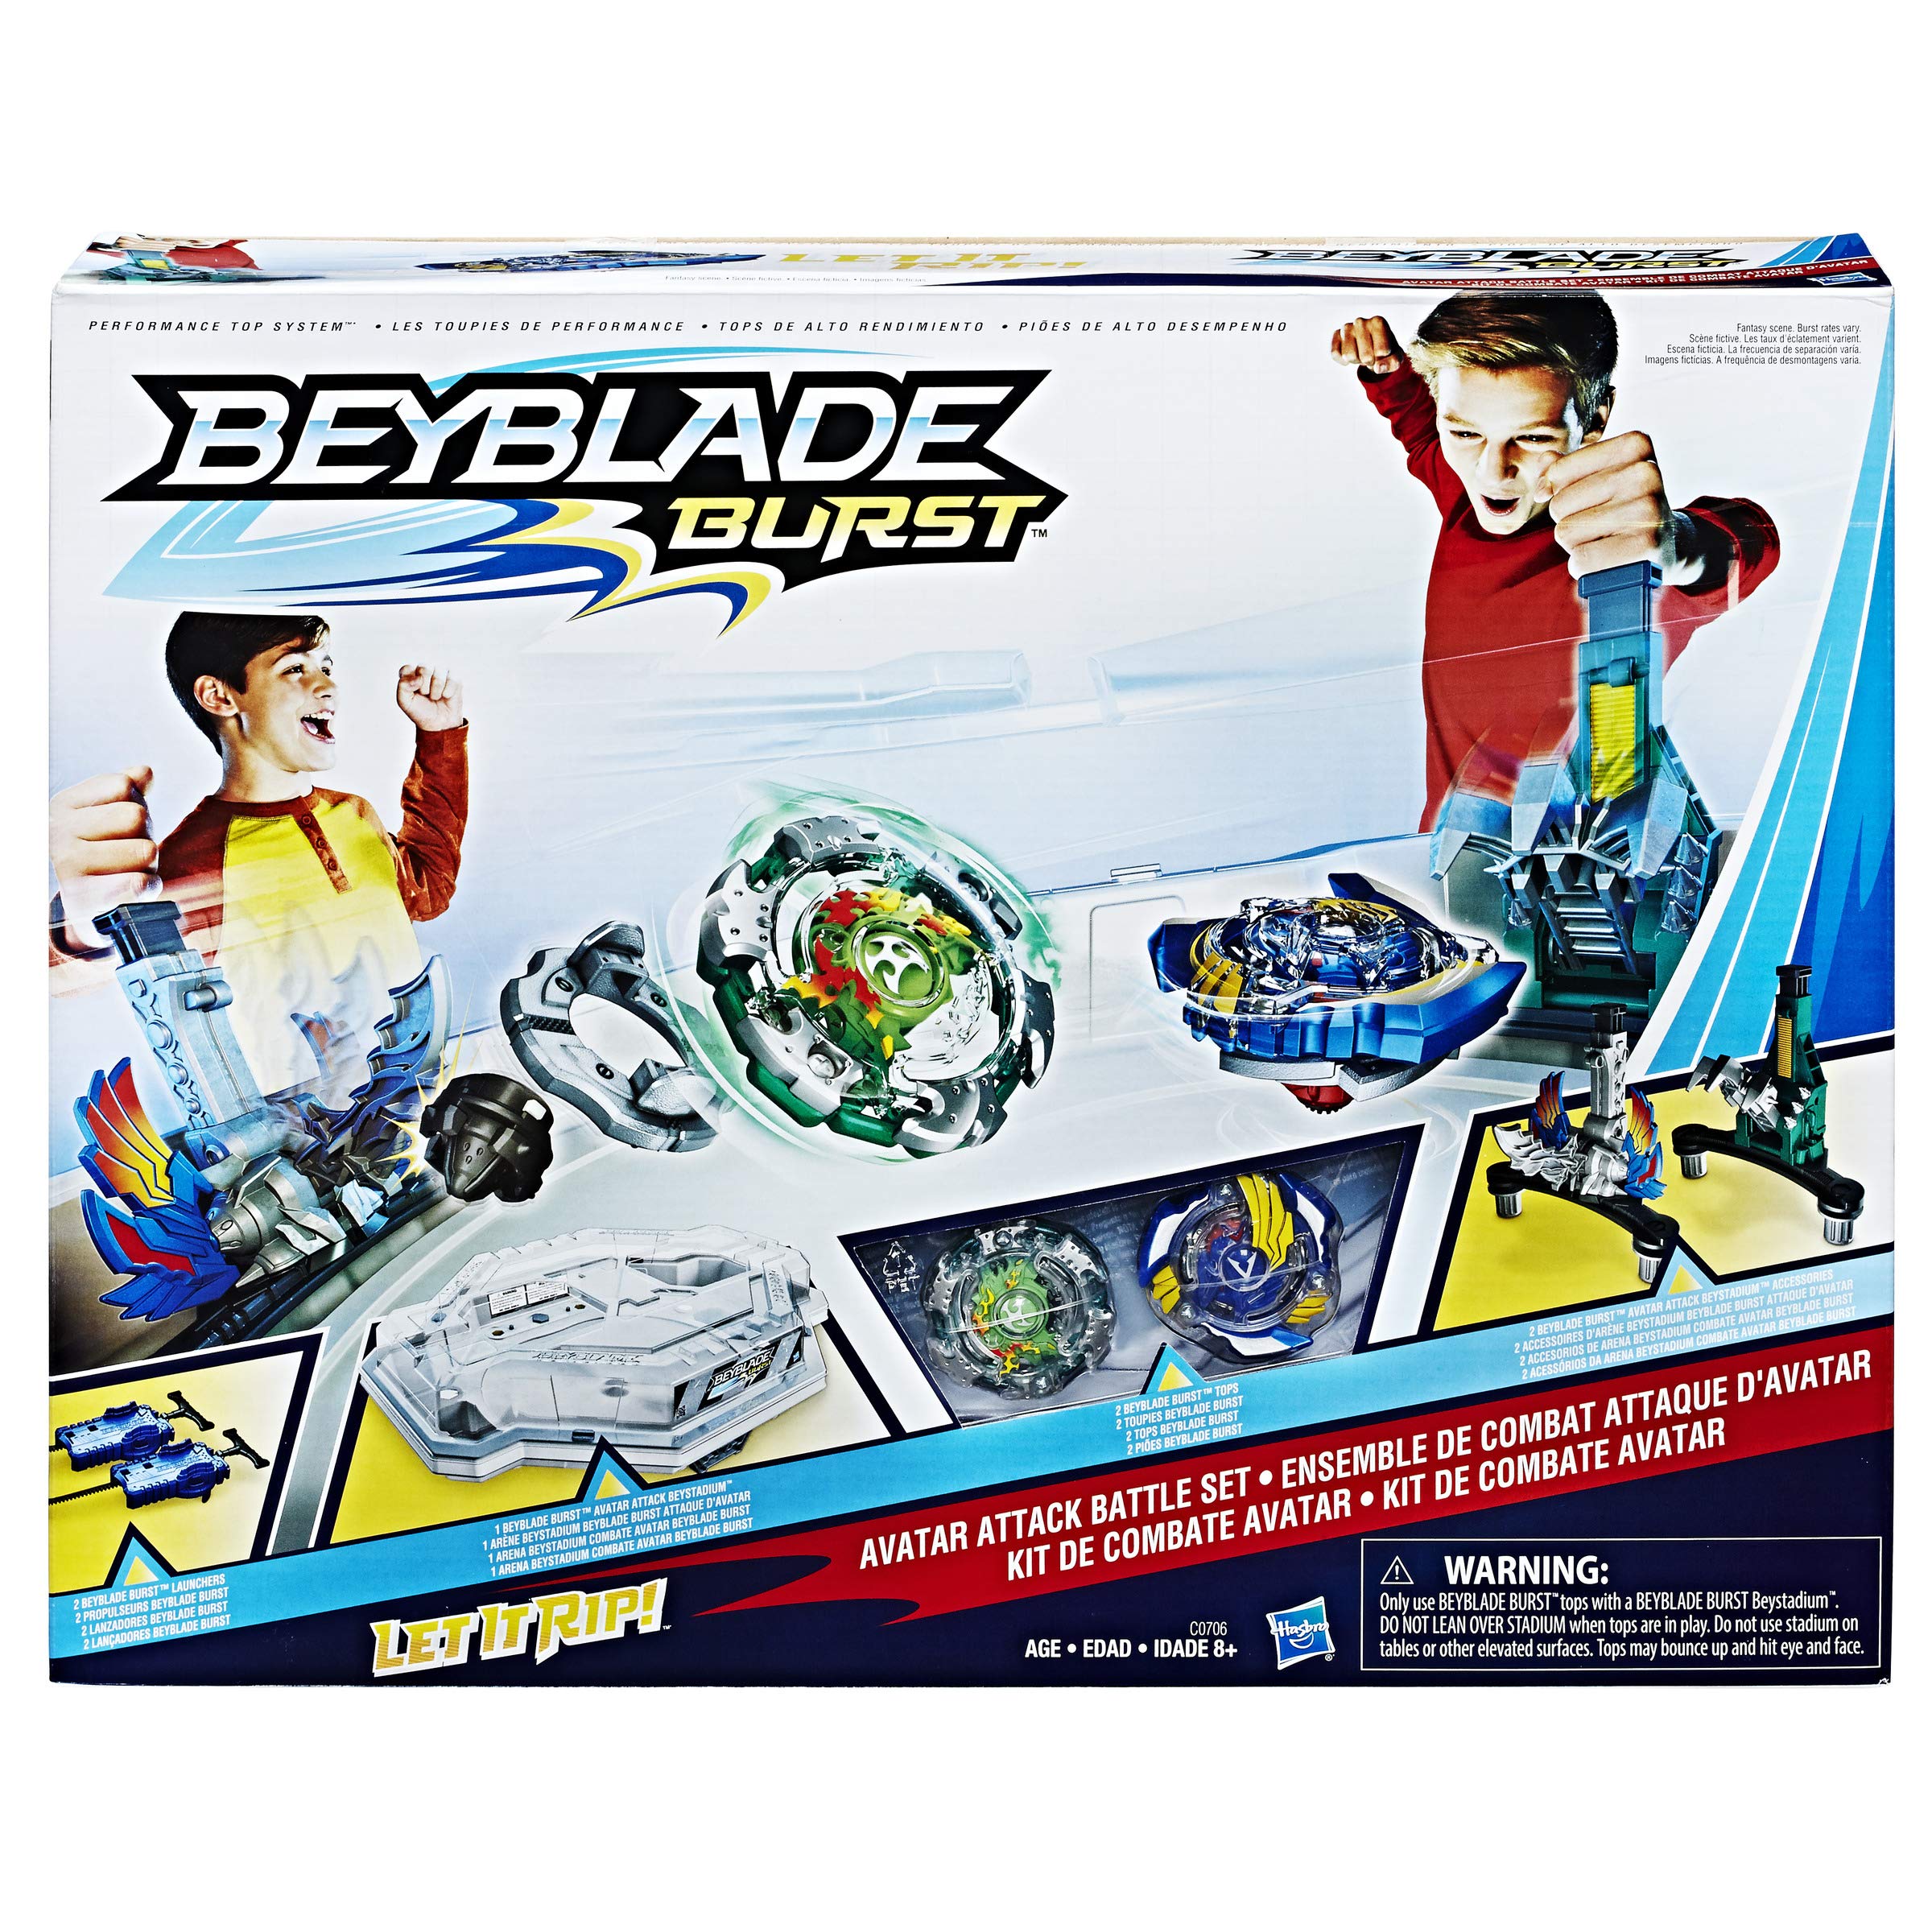 Chuẩn bị cho một trận thi đấu sôi động với BEYBLADE Burst Avatar Attack Battle Set game. Sử dụng chiếc Beyblade của bạn để đánh bại đối thủ và trở thành nhà vô địch trong cuộc thi danh giá này.